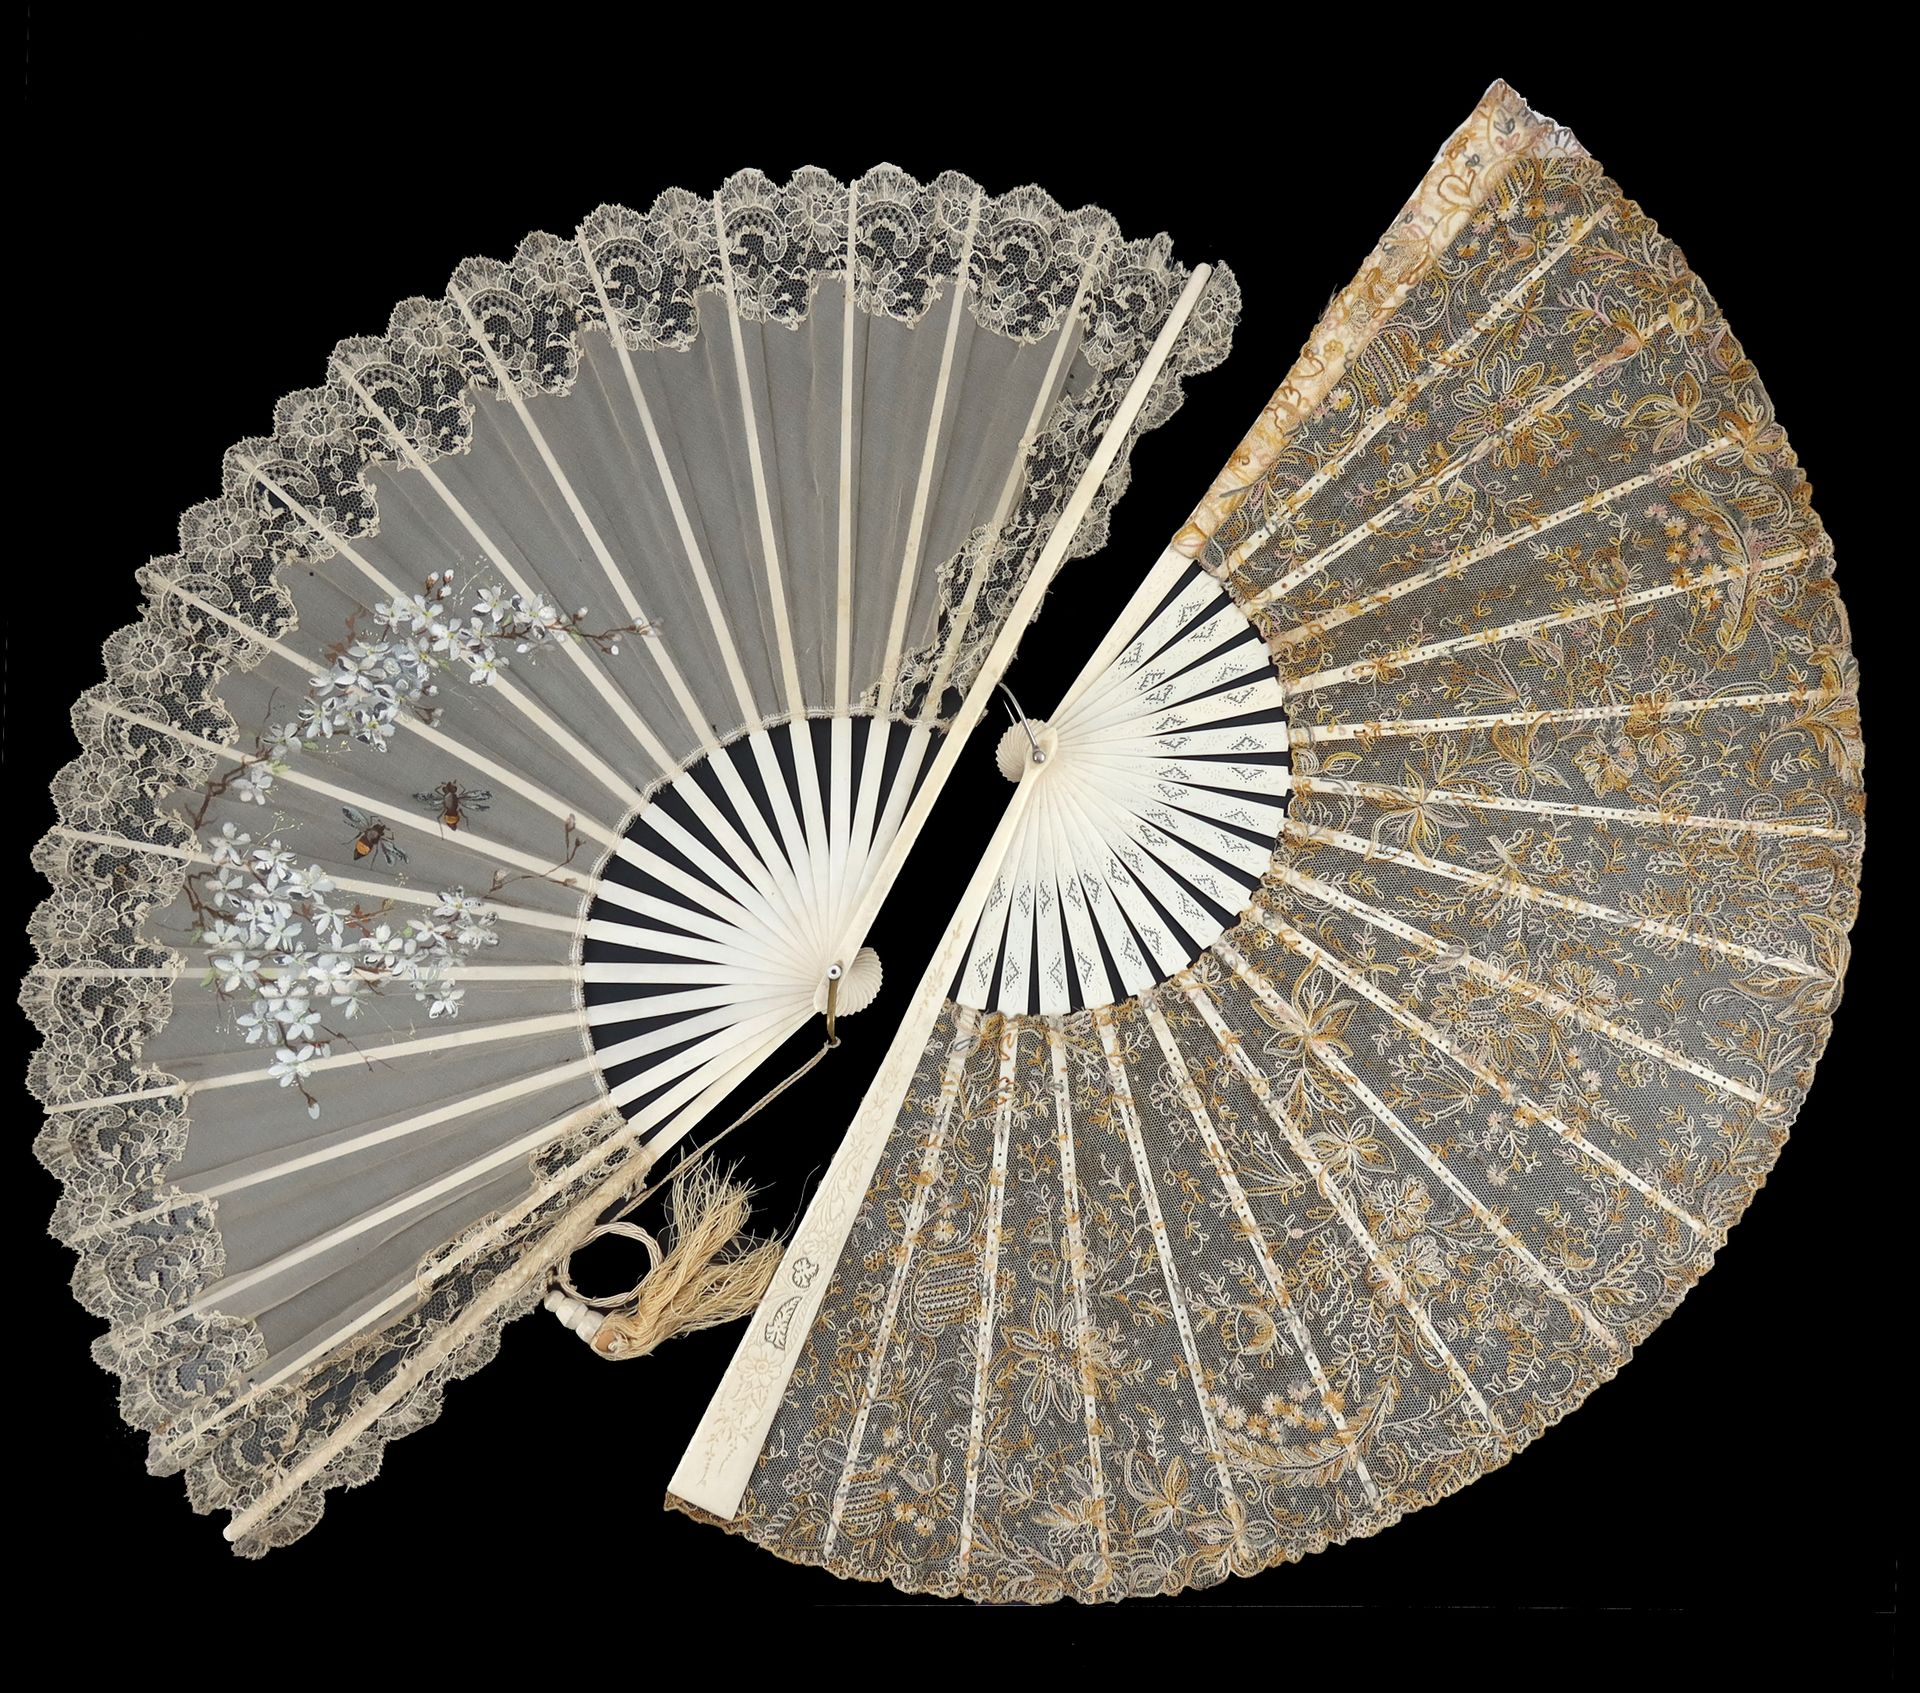 Null 两把1890年的夏日扇子，第一把扇子有一个刺绣的网状叶子，用的是芥末色、奶油色和淡粉色的丝绸，可能是利默里克花边，安装在轻度雕刻和穿孔的骨头上；第二把&hellip;